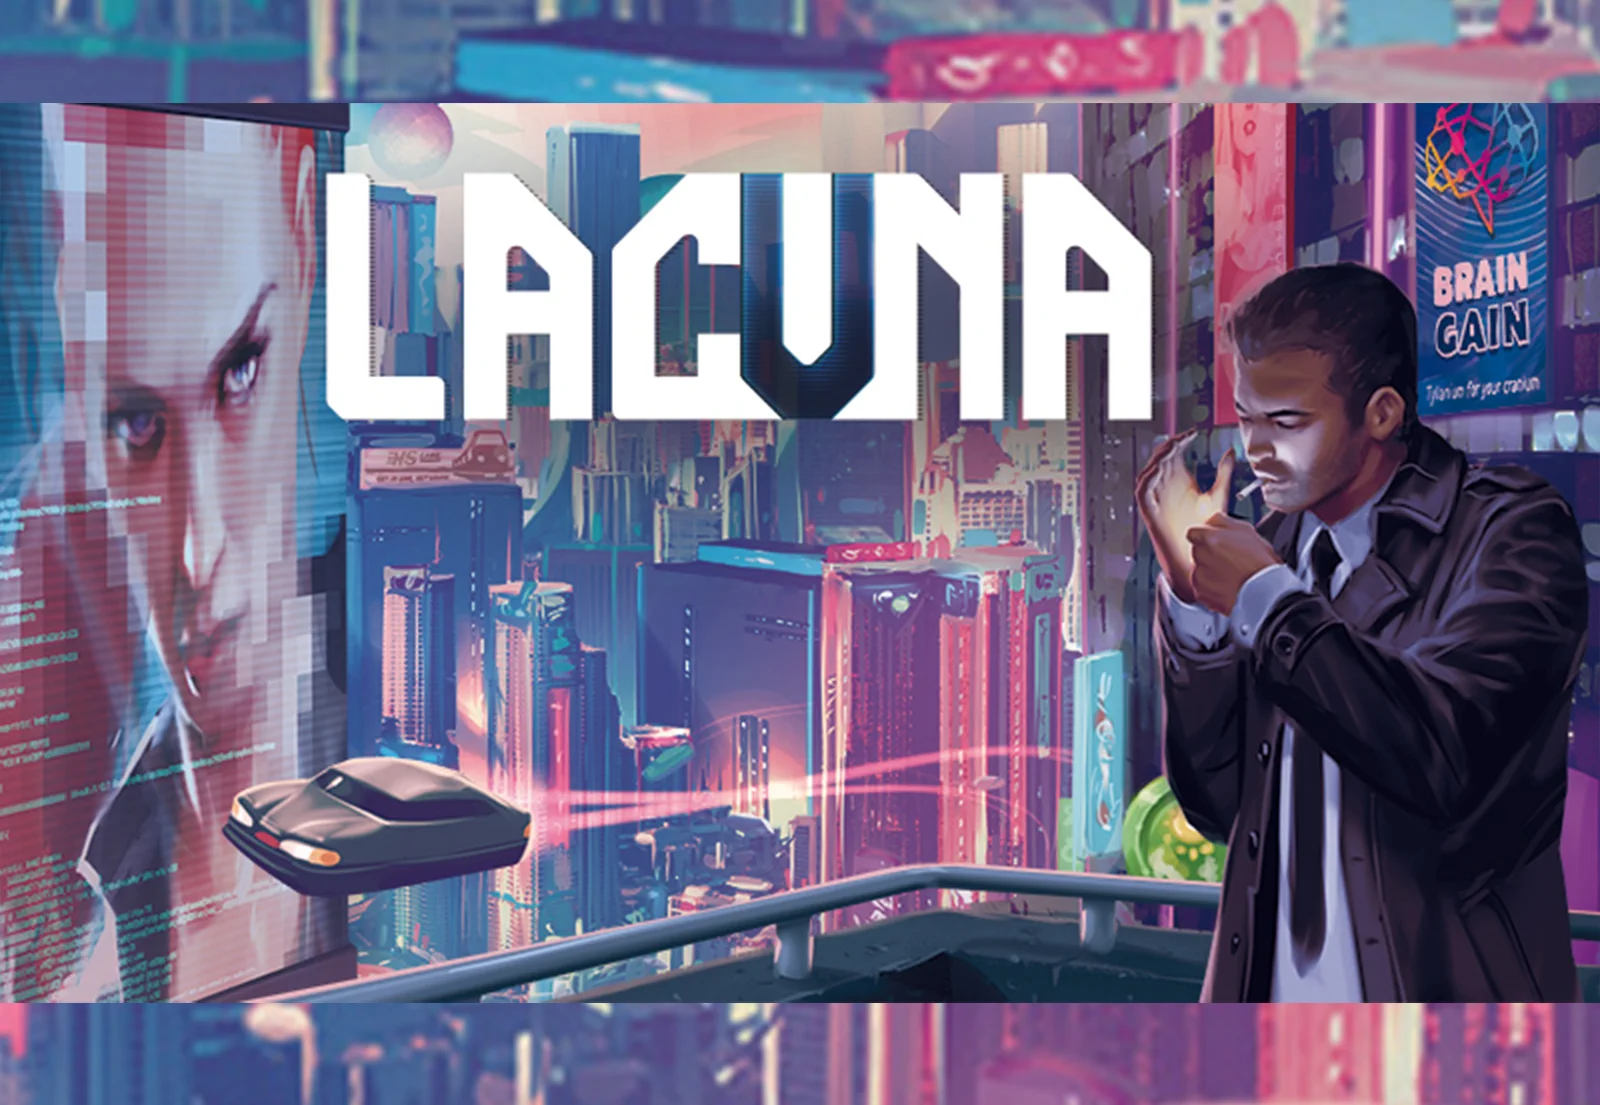 LACUNA - Unsere Eindrücke zu dem Sci-Fi-Noir-Abenteuer!